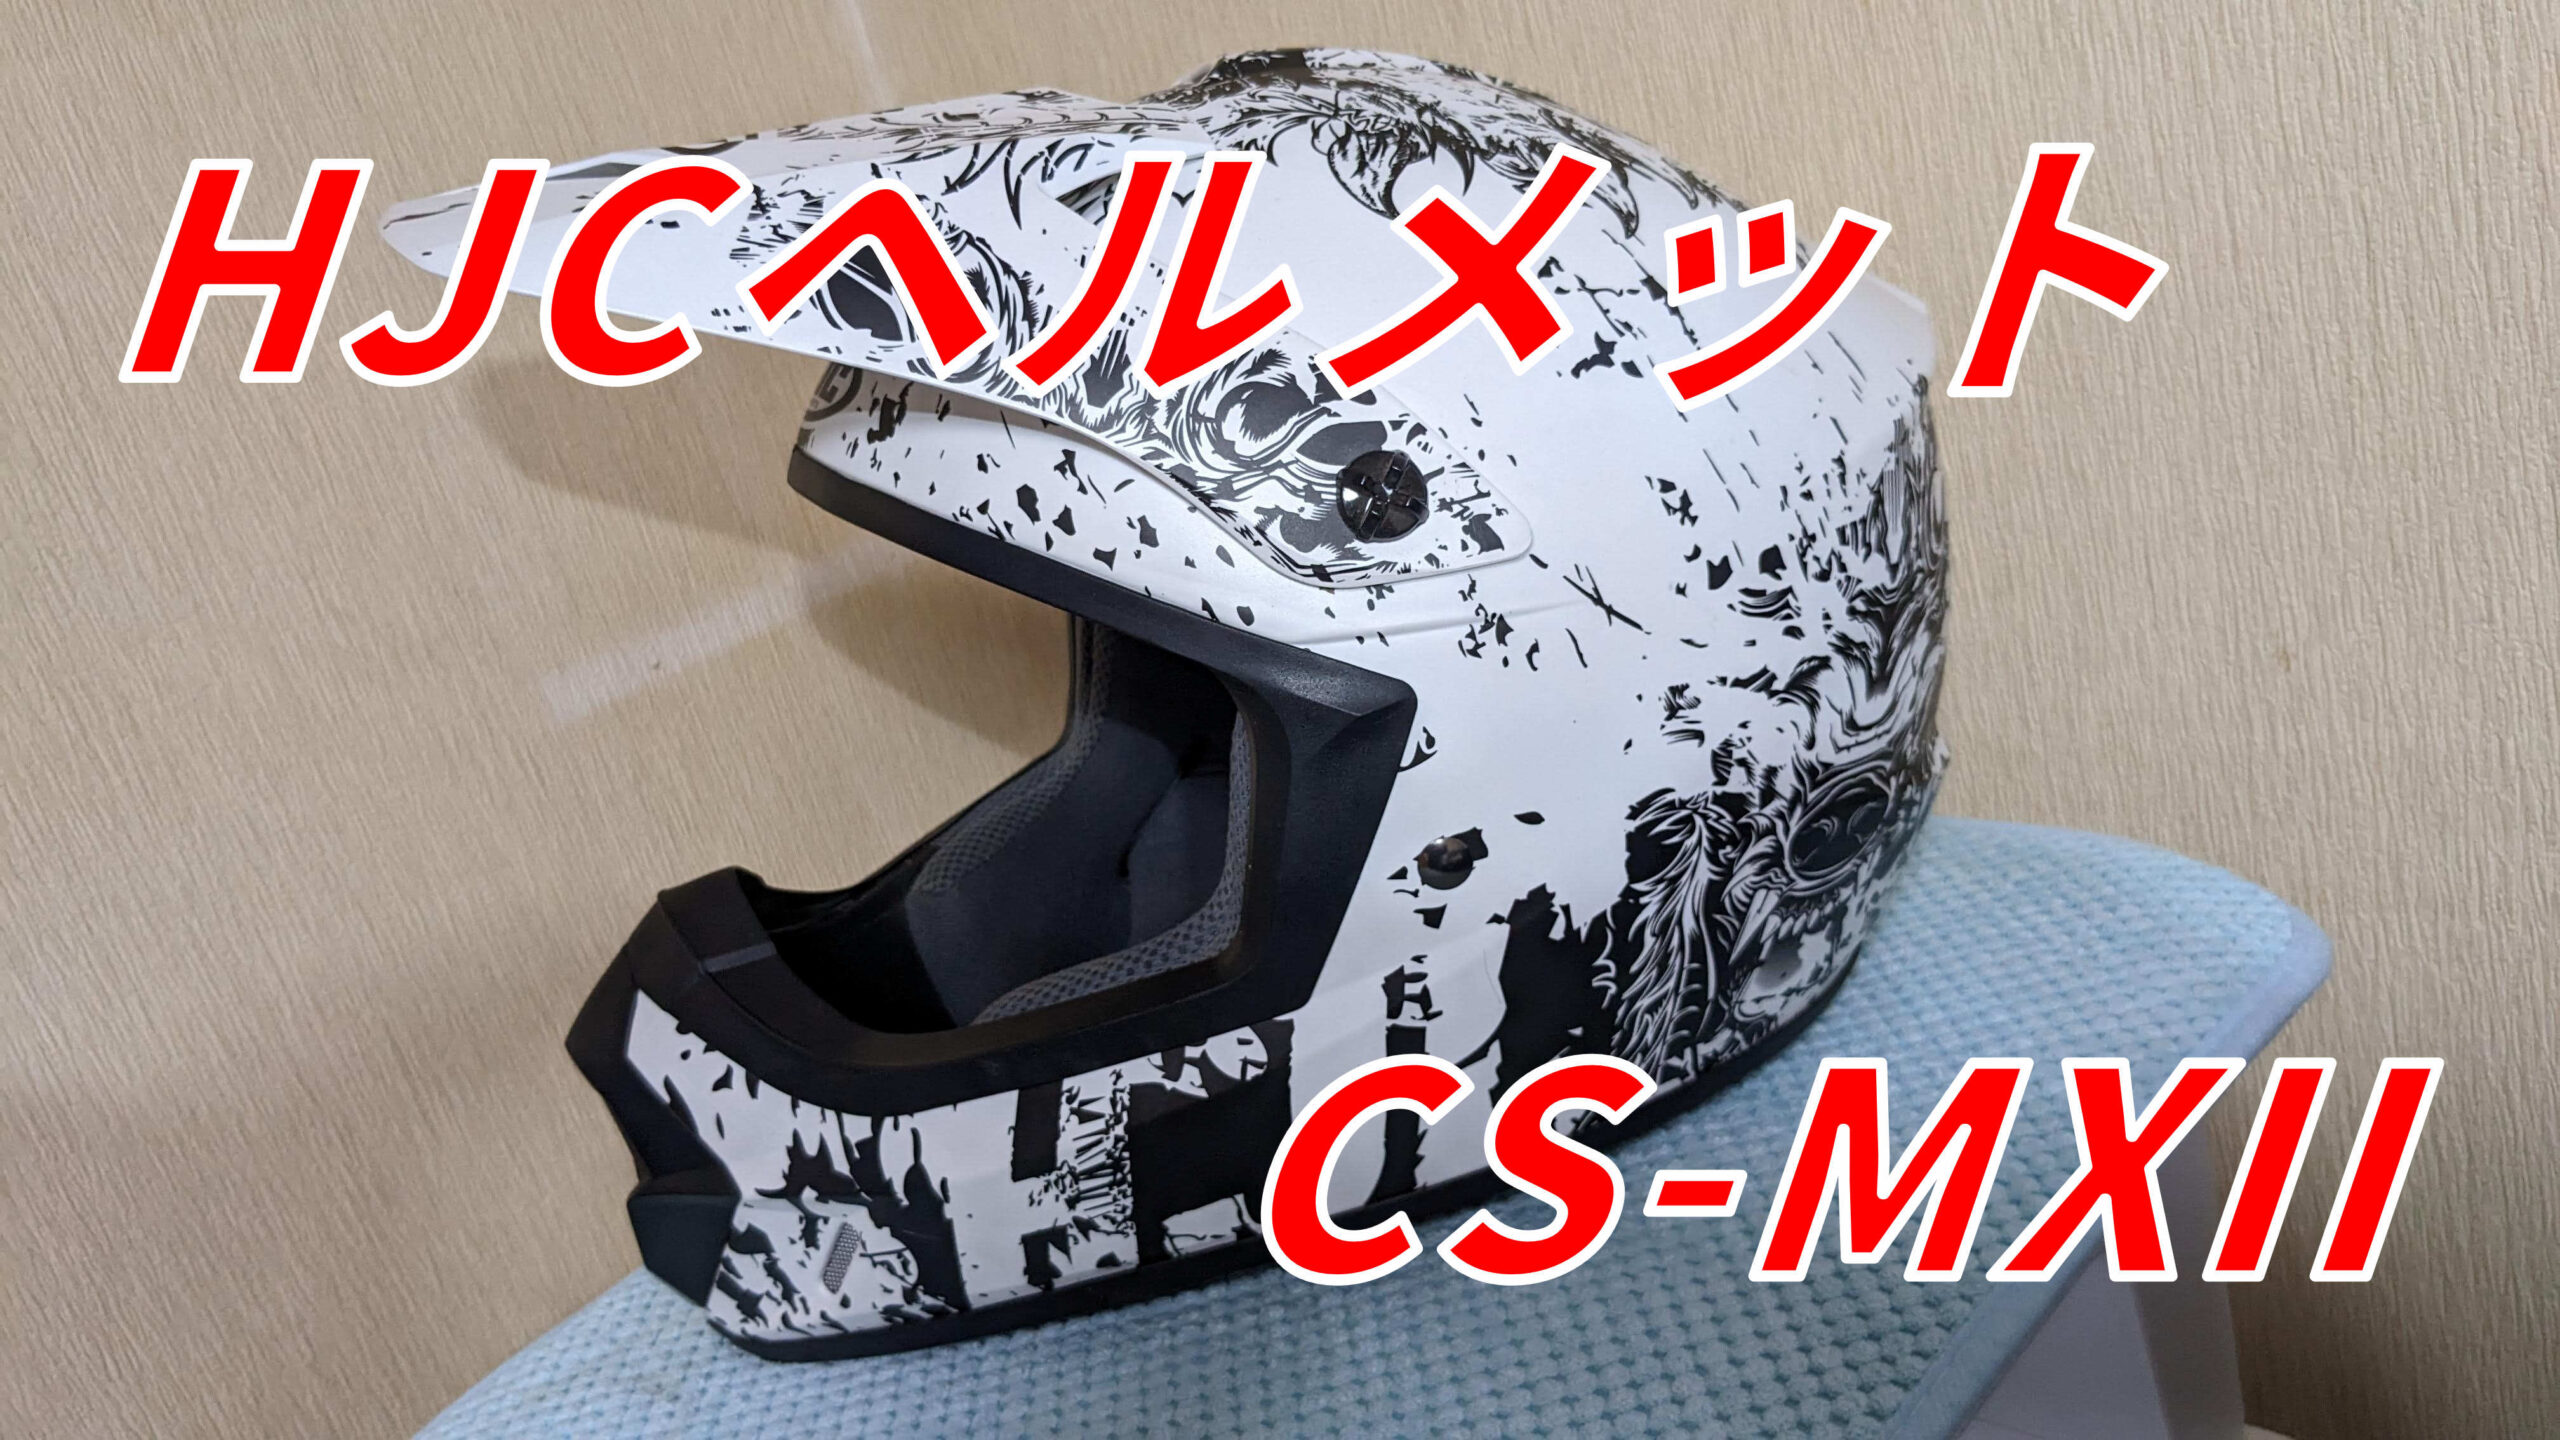 オフロード】HJC-CS-MXII商品レビュー【ヘルメット】 | バイクとクルマ